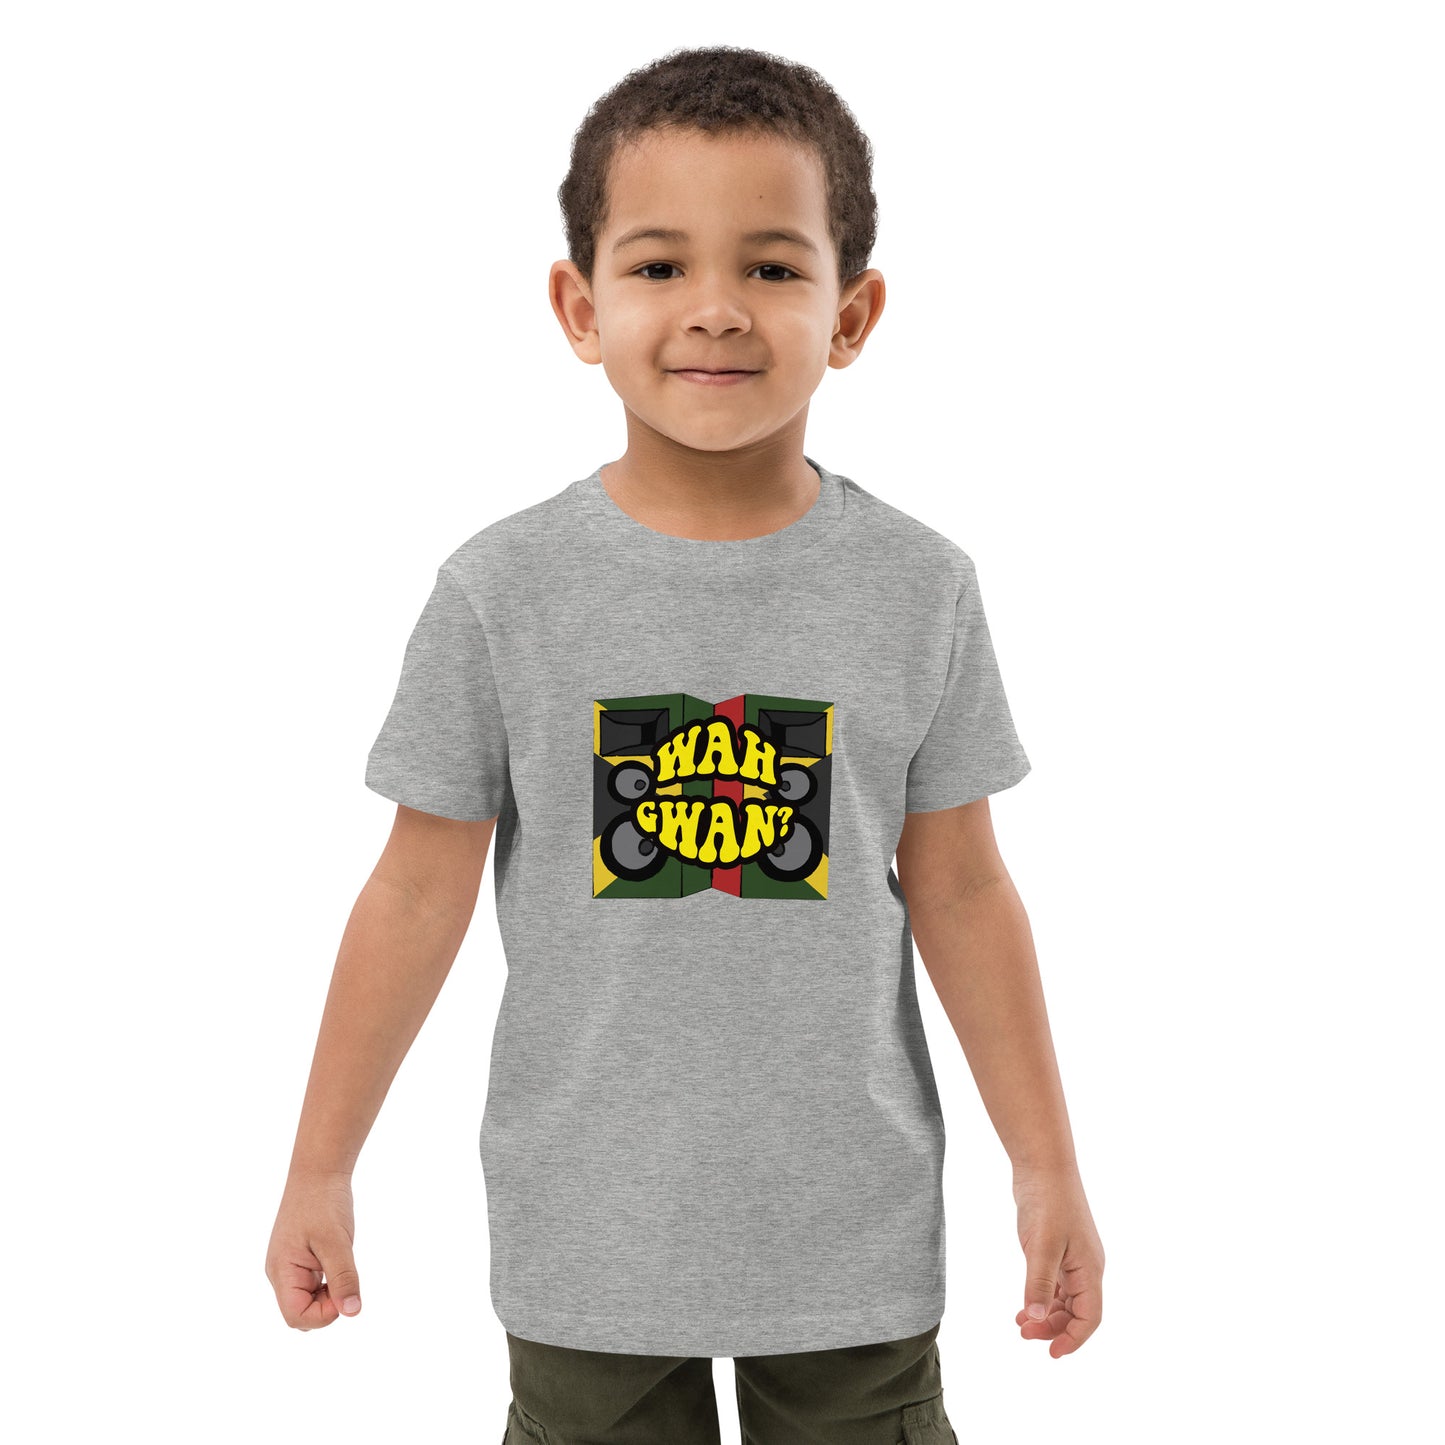 Organic cotton kids "Wah Gwan" t-shirt